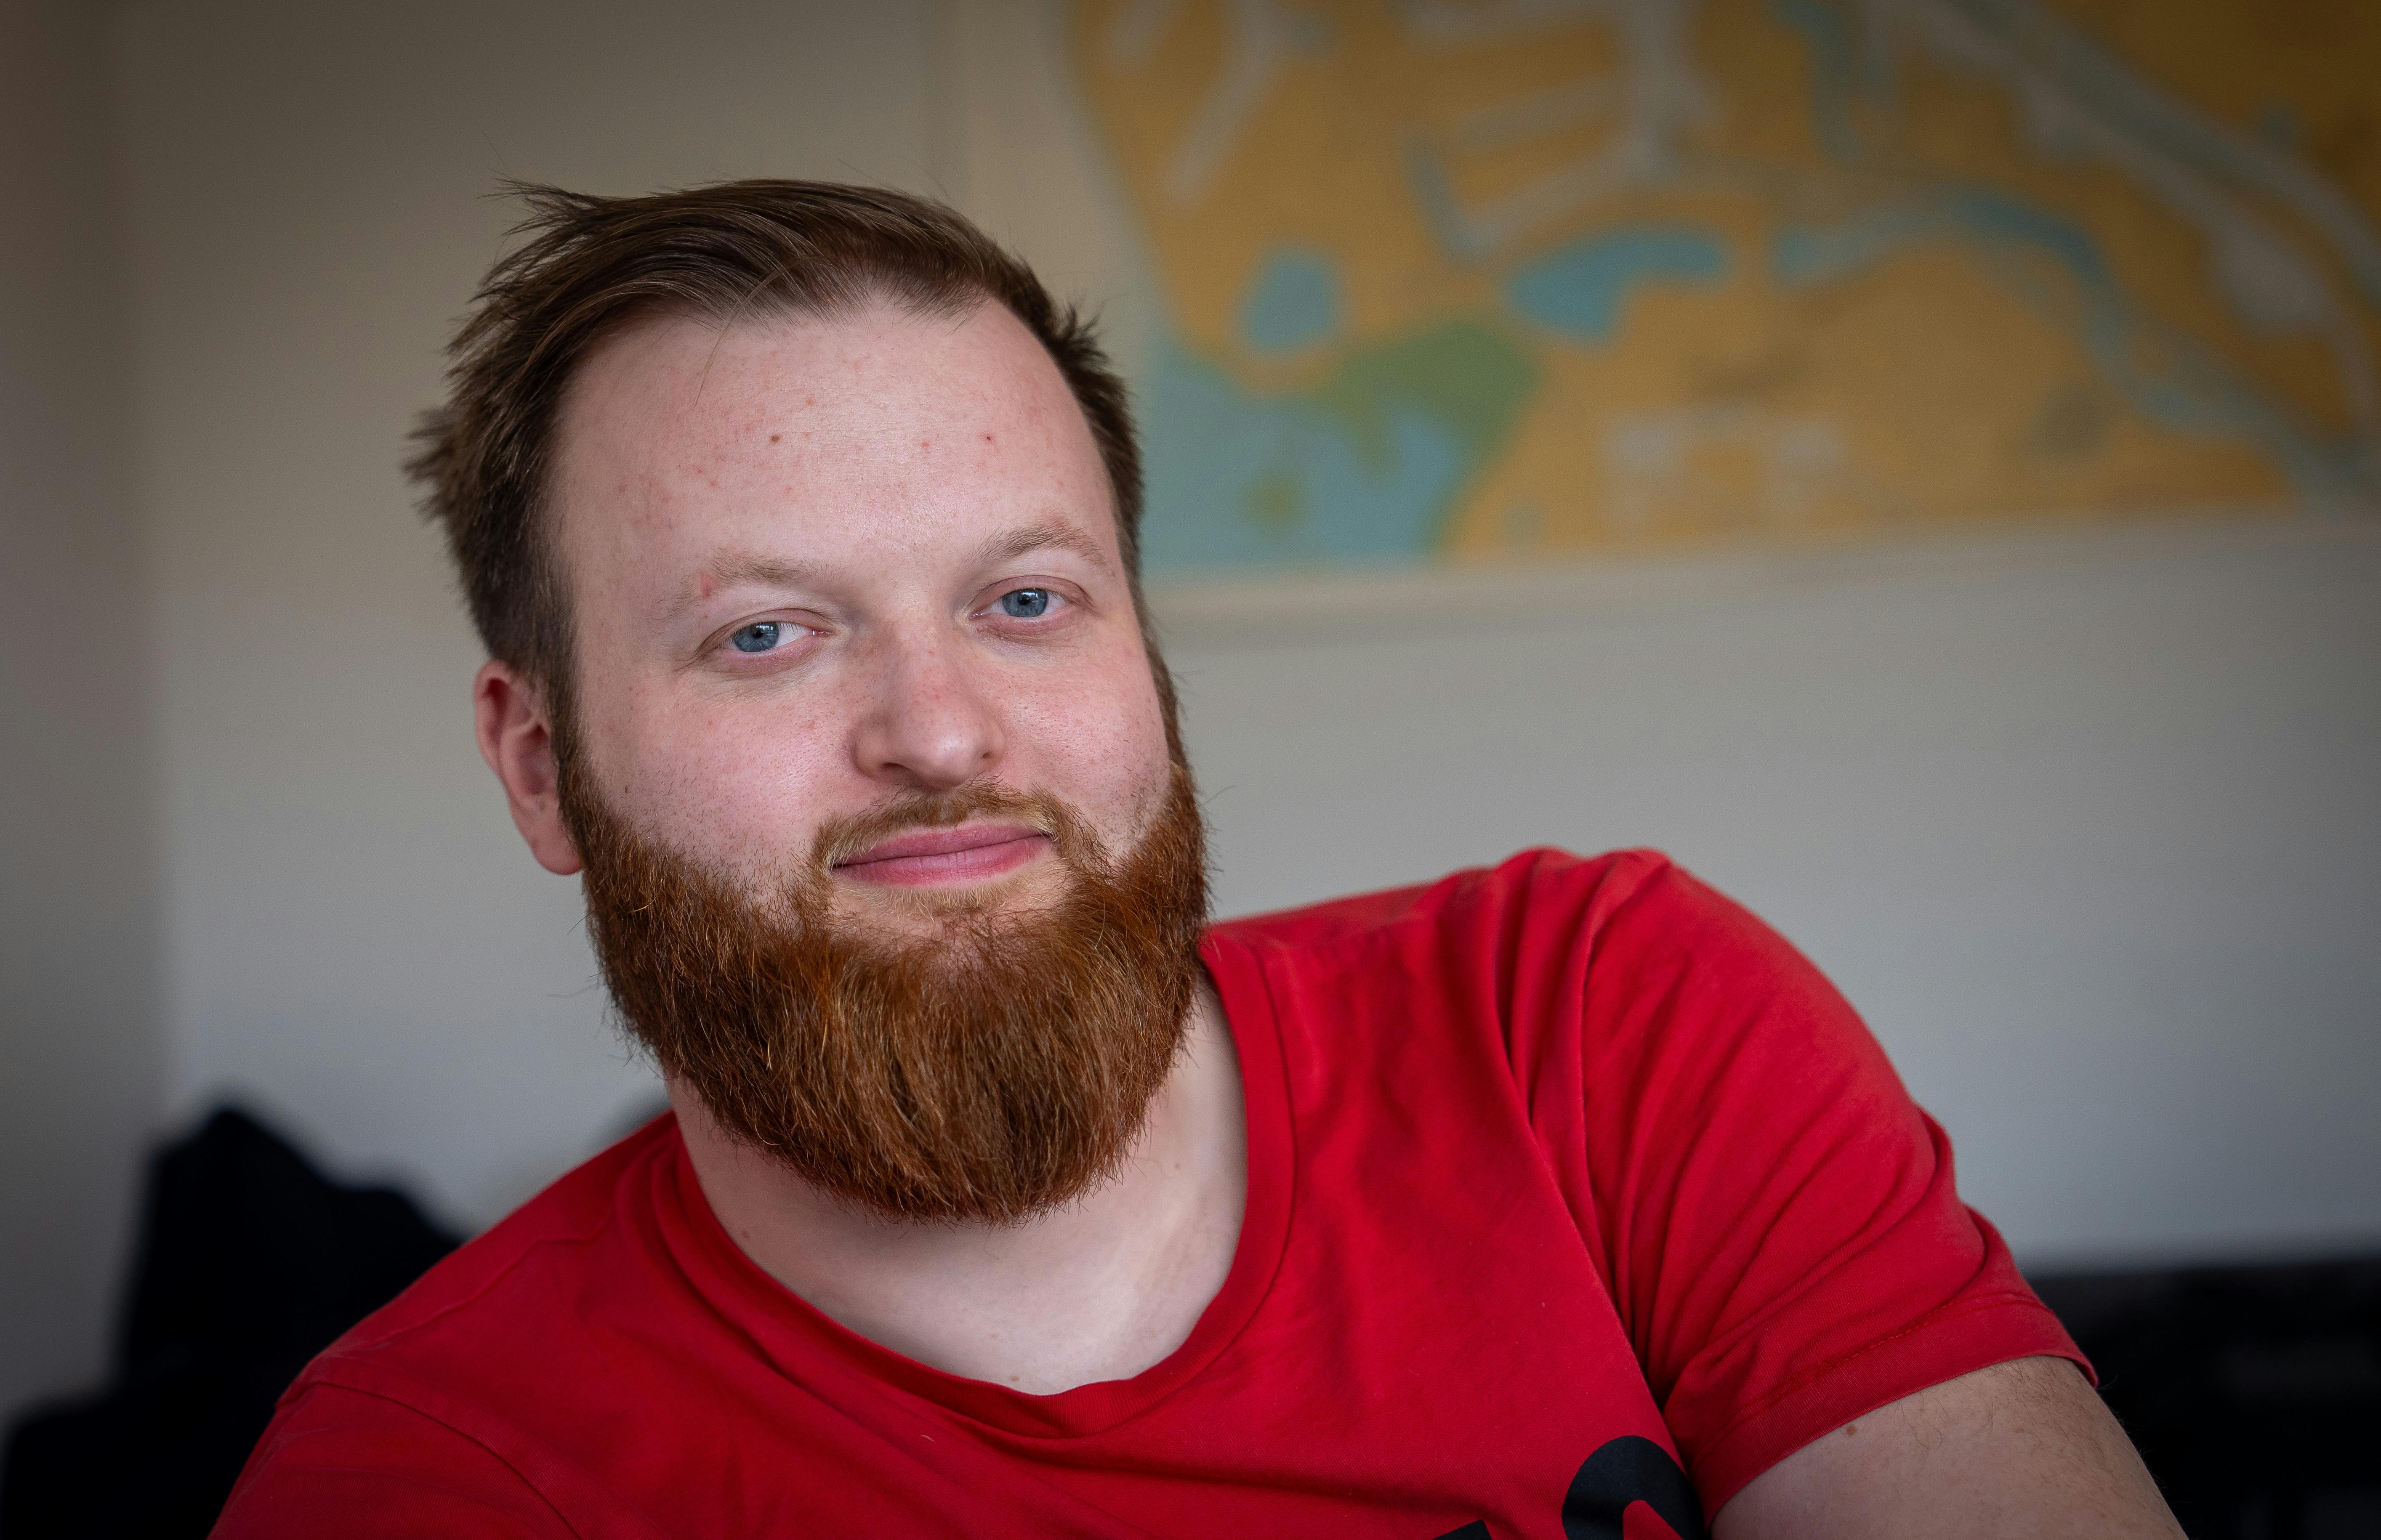 Selv om Rasmus Bruun, 26, fra TV 2’s ”Kærlighed hvor kragerne vender” har en sjælden genfejl, som bl.a. gør, at han har tyndt hår, så fejler skægvæksten ikke noget.